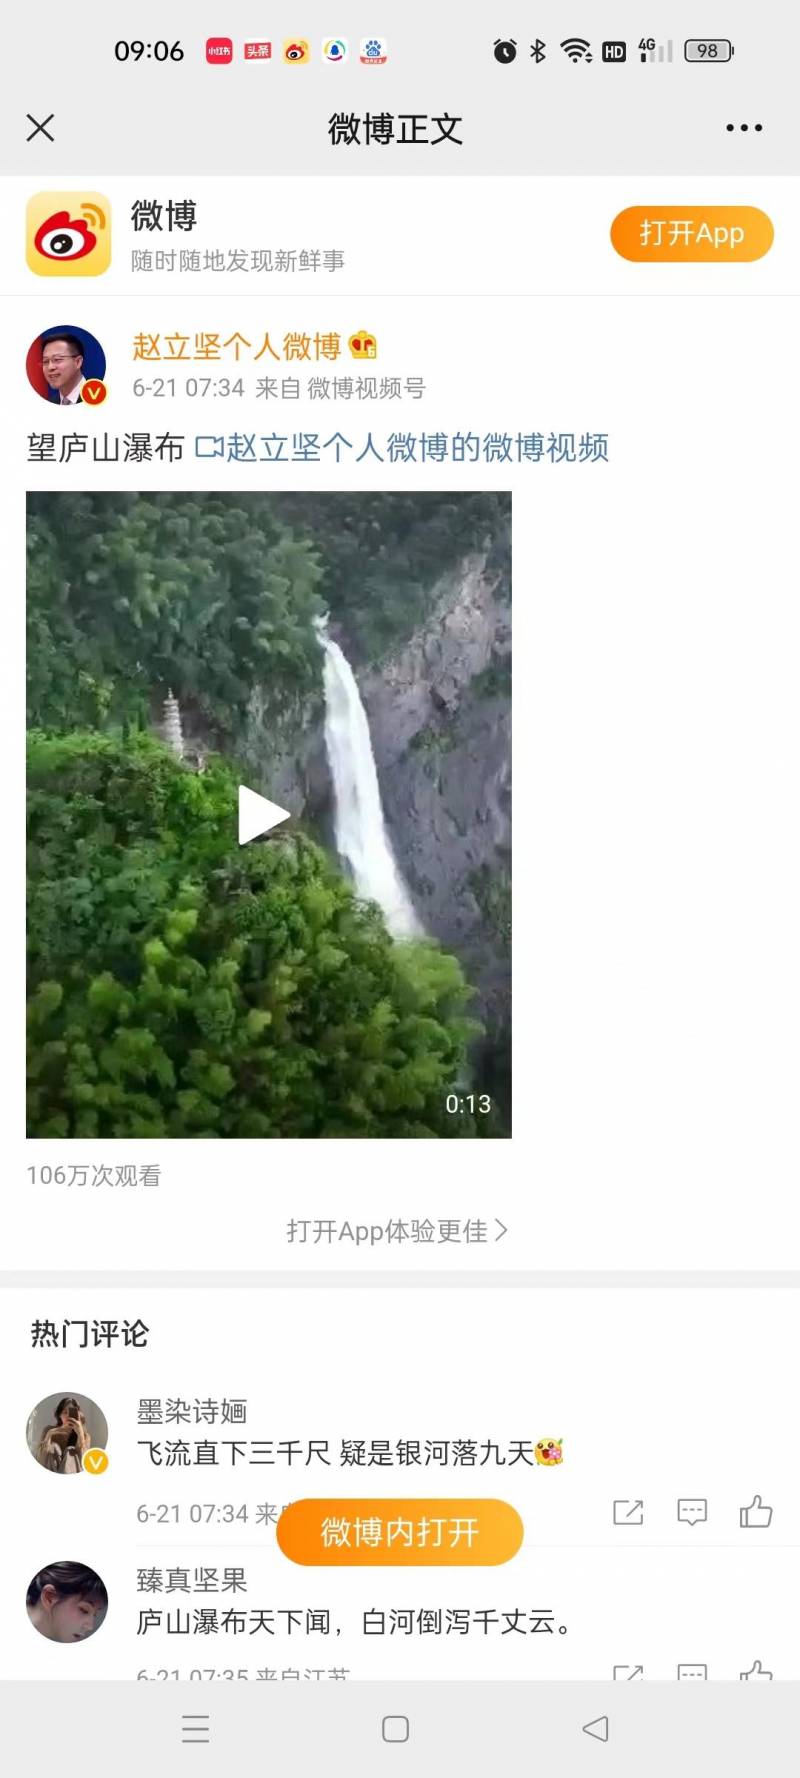 中國廬山的微博，106萬點贊！趙立堅分享的廬山瀑佈美景你看過了嗎？